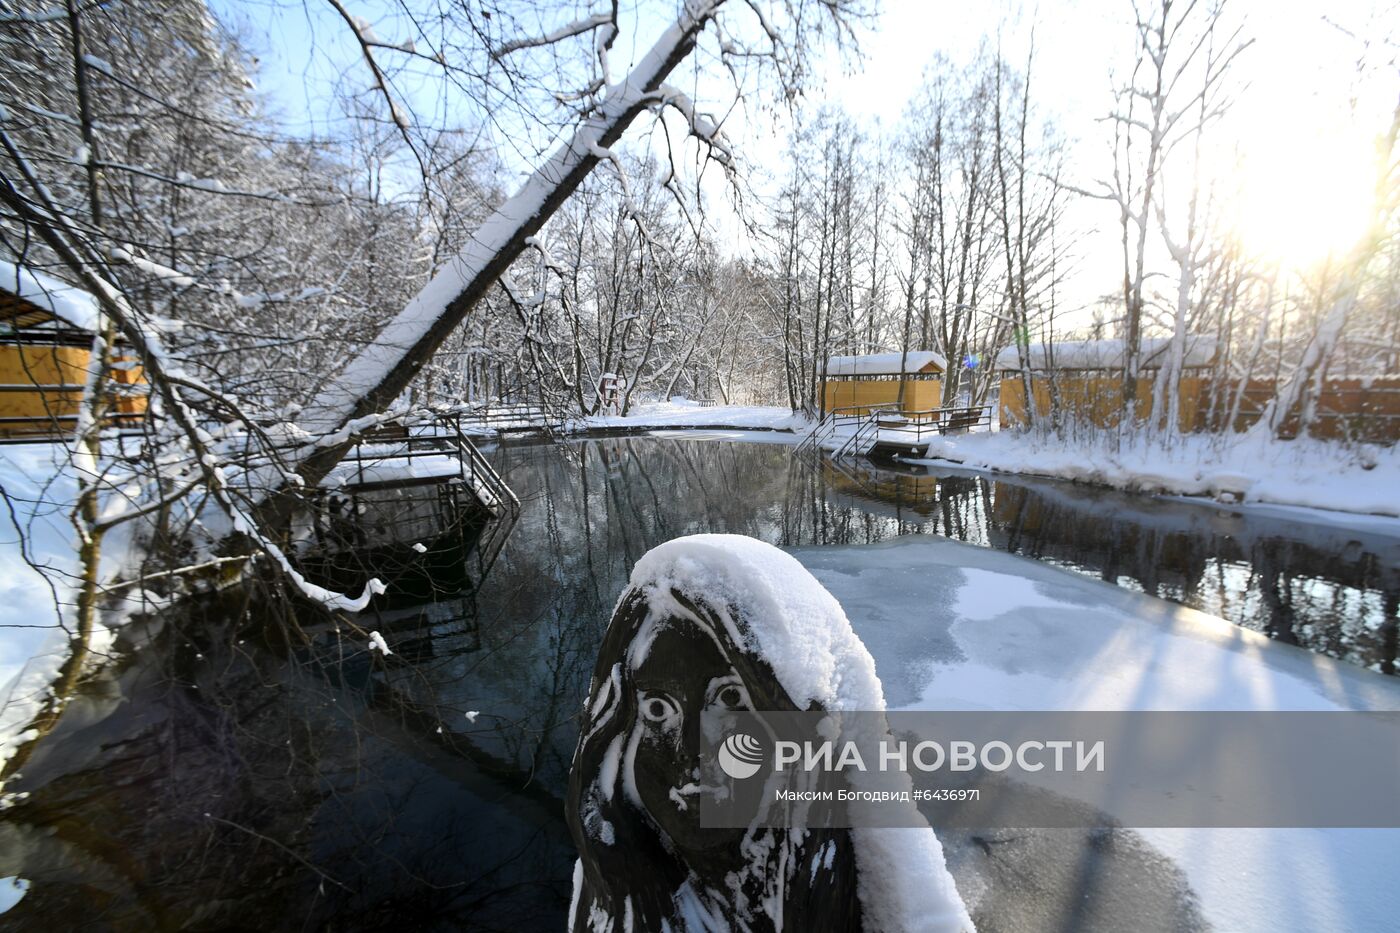 Природный заповедник "Голубые озёра" в Татарстане